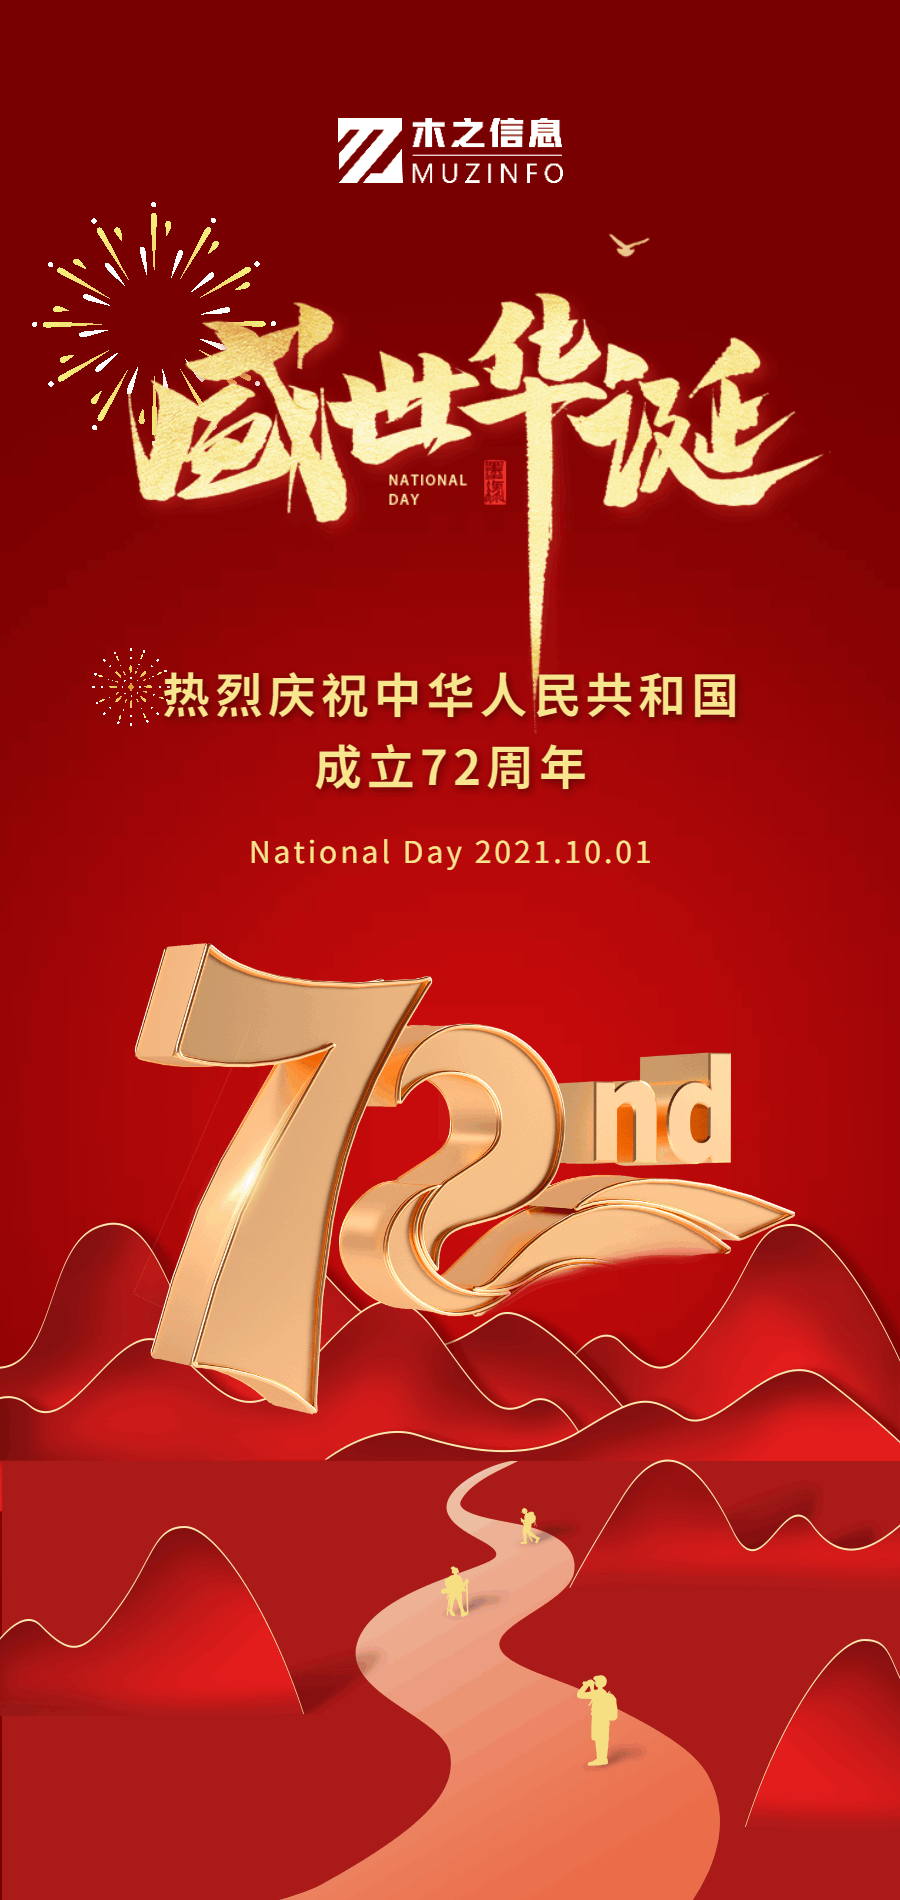 【庆祝国庆】喜迎国庆，祖国万岁！热烈庆祝中华人民共和国成立72周年！